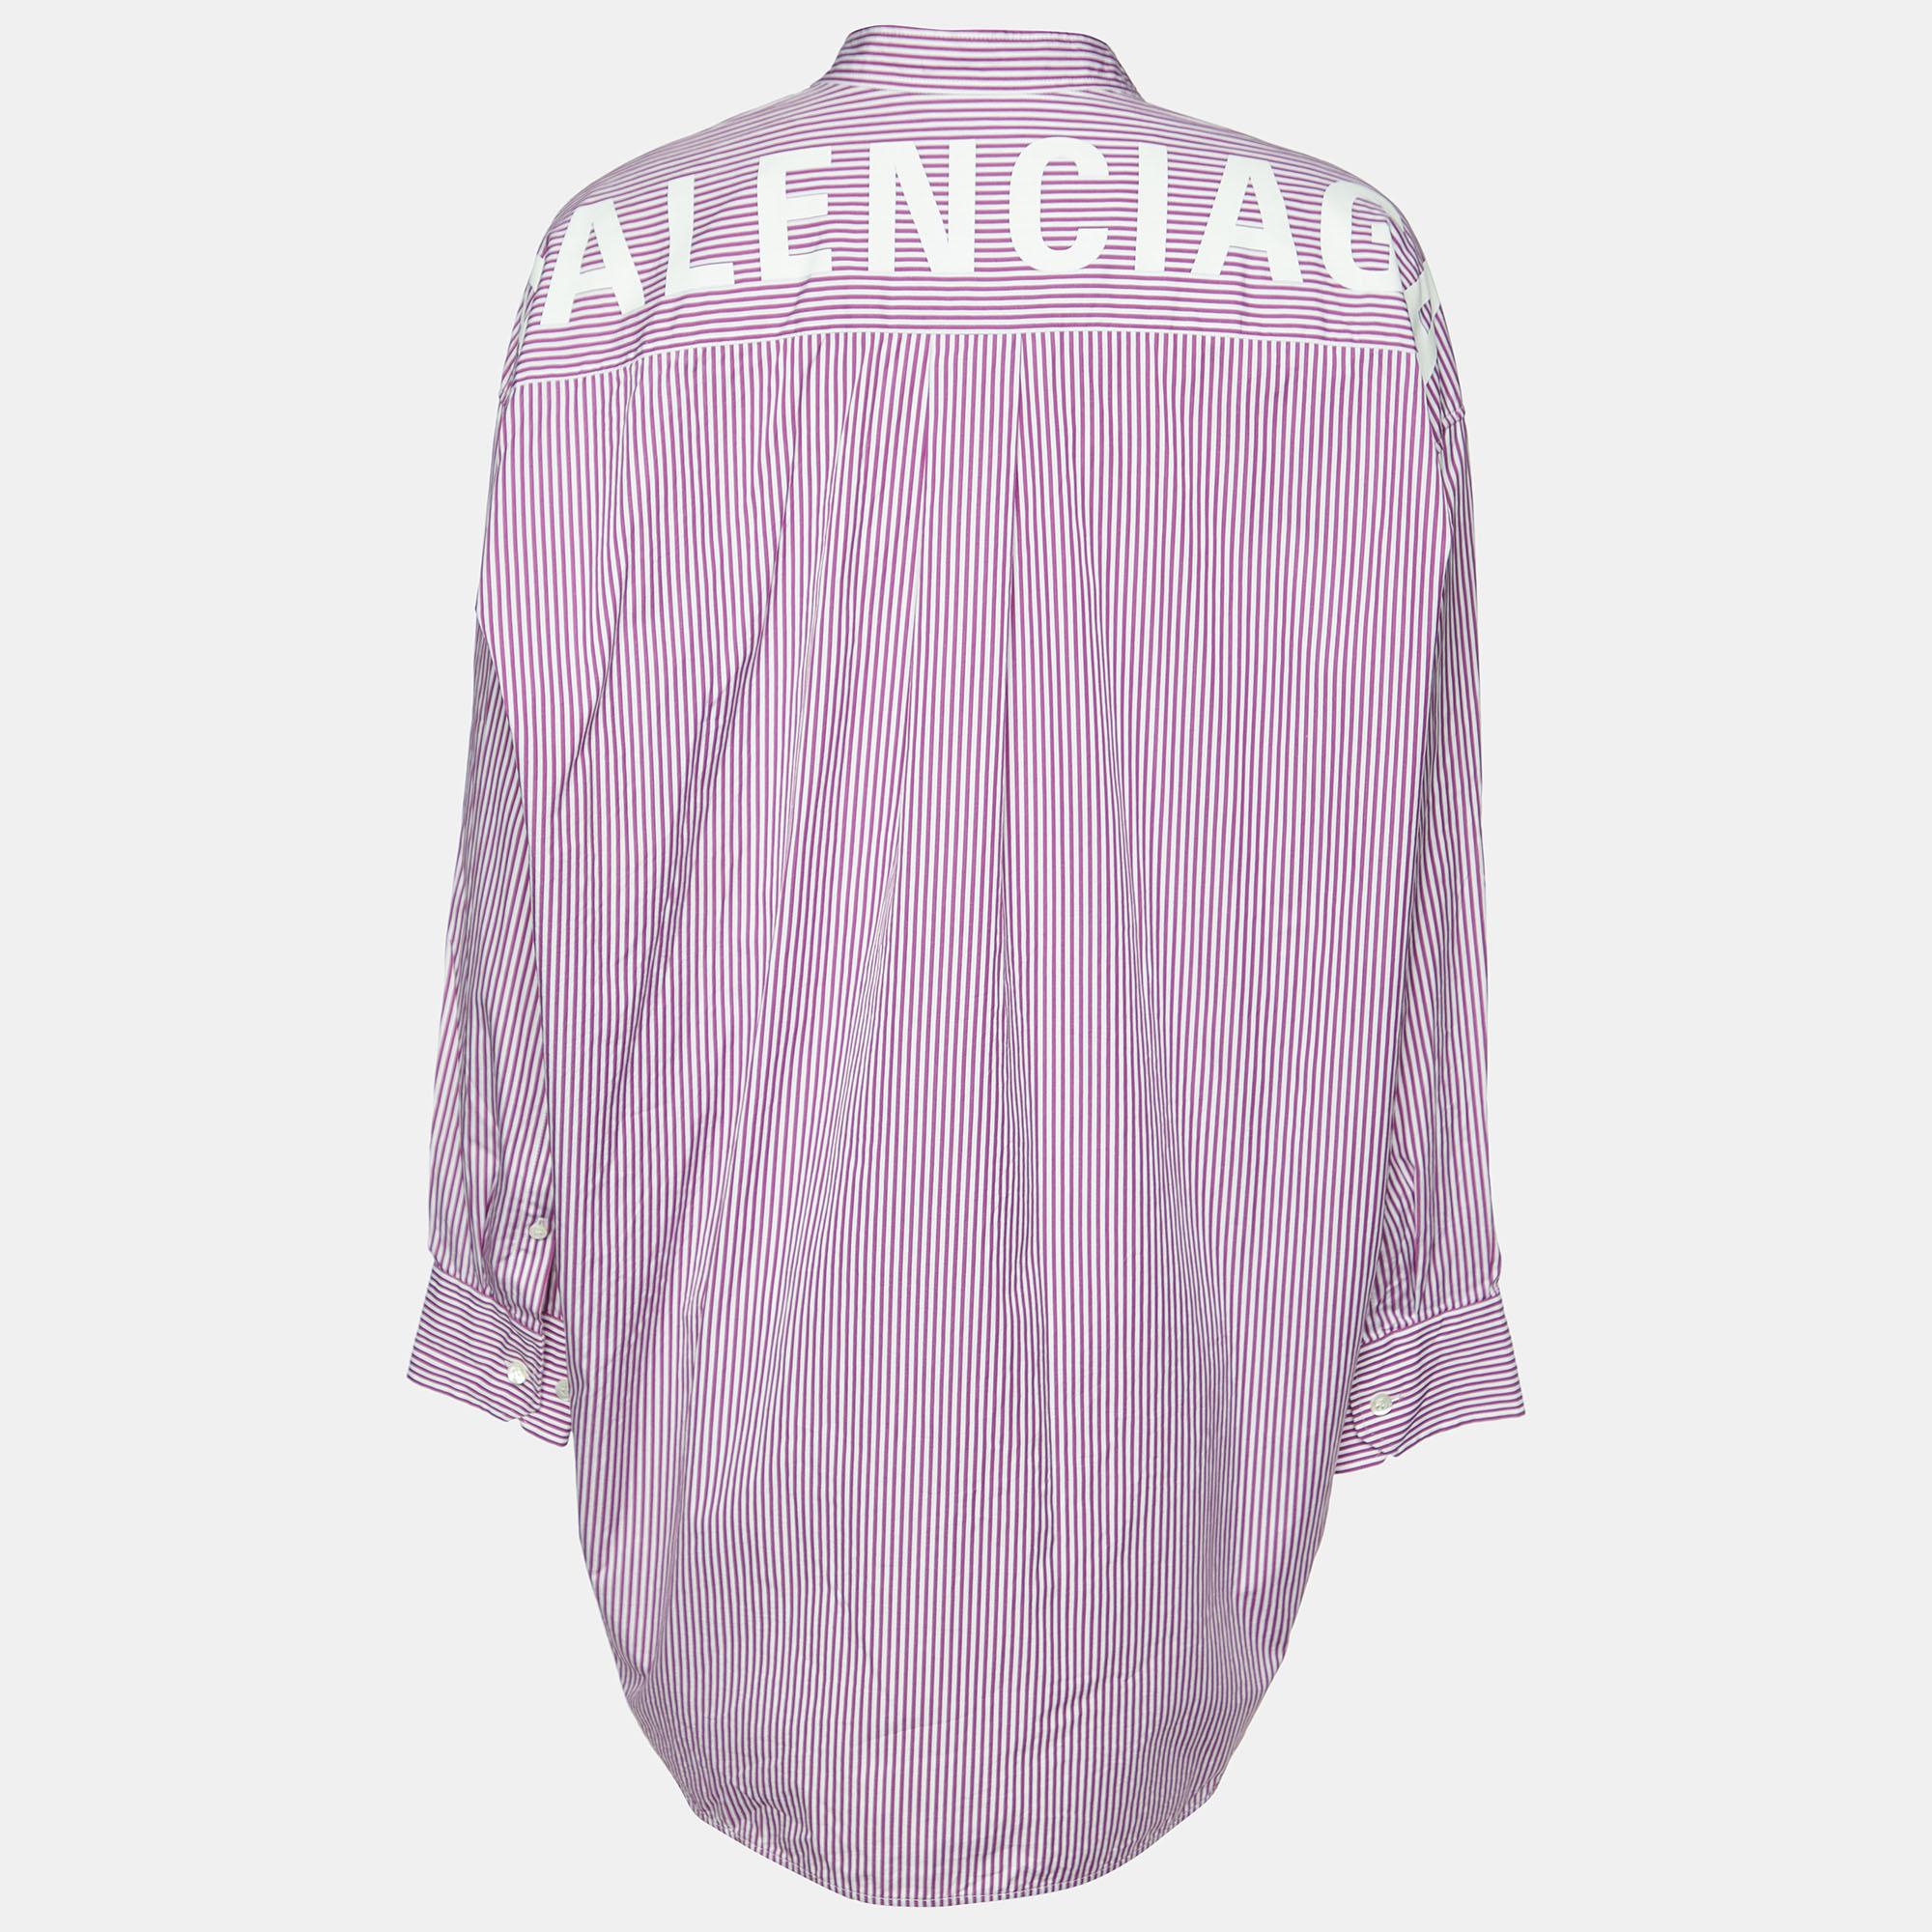 Dieses übergroße Hemd von Balenciaga hat einen klassischen Look mit Streifen. Das aus Baumwolle geschneiderte Damenhemd hat lange Manschettenärmel, ein Krawatten-Detail und den Markennamen auf der Rückseite.

